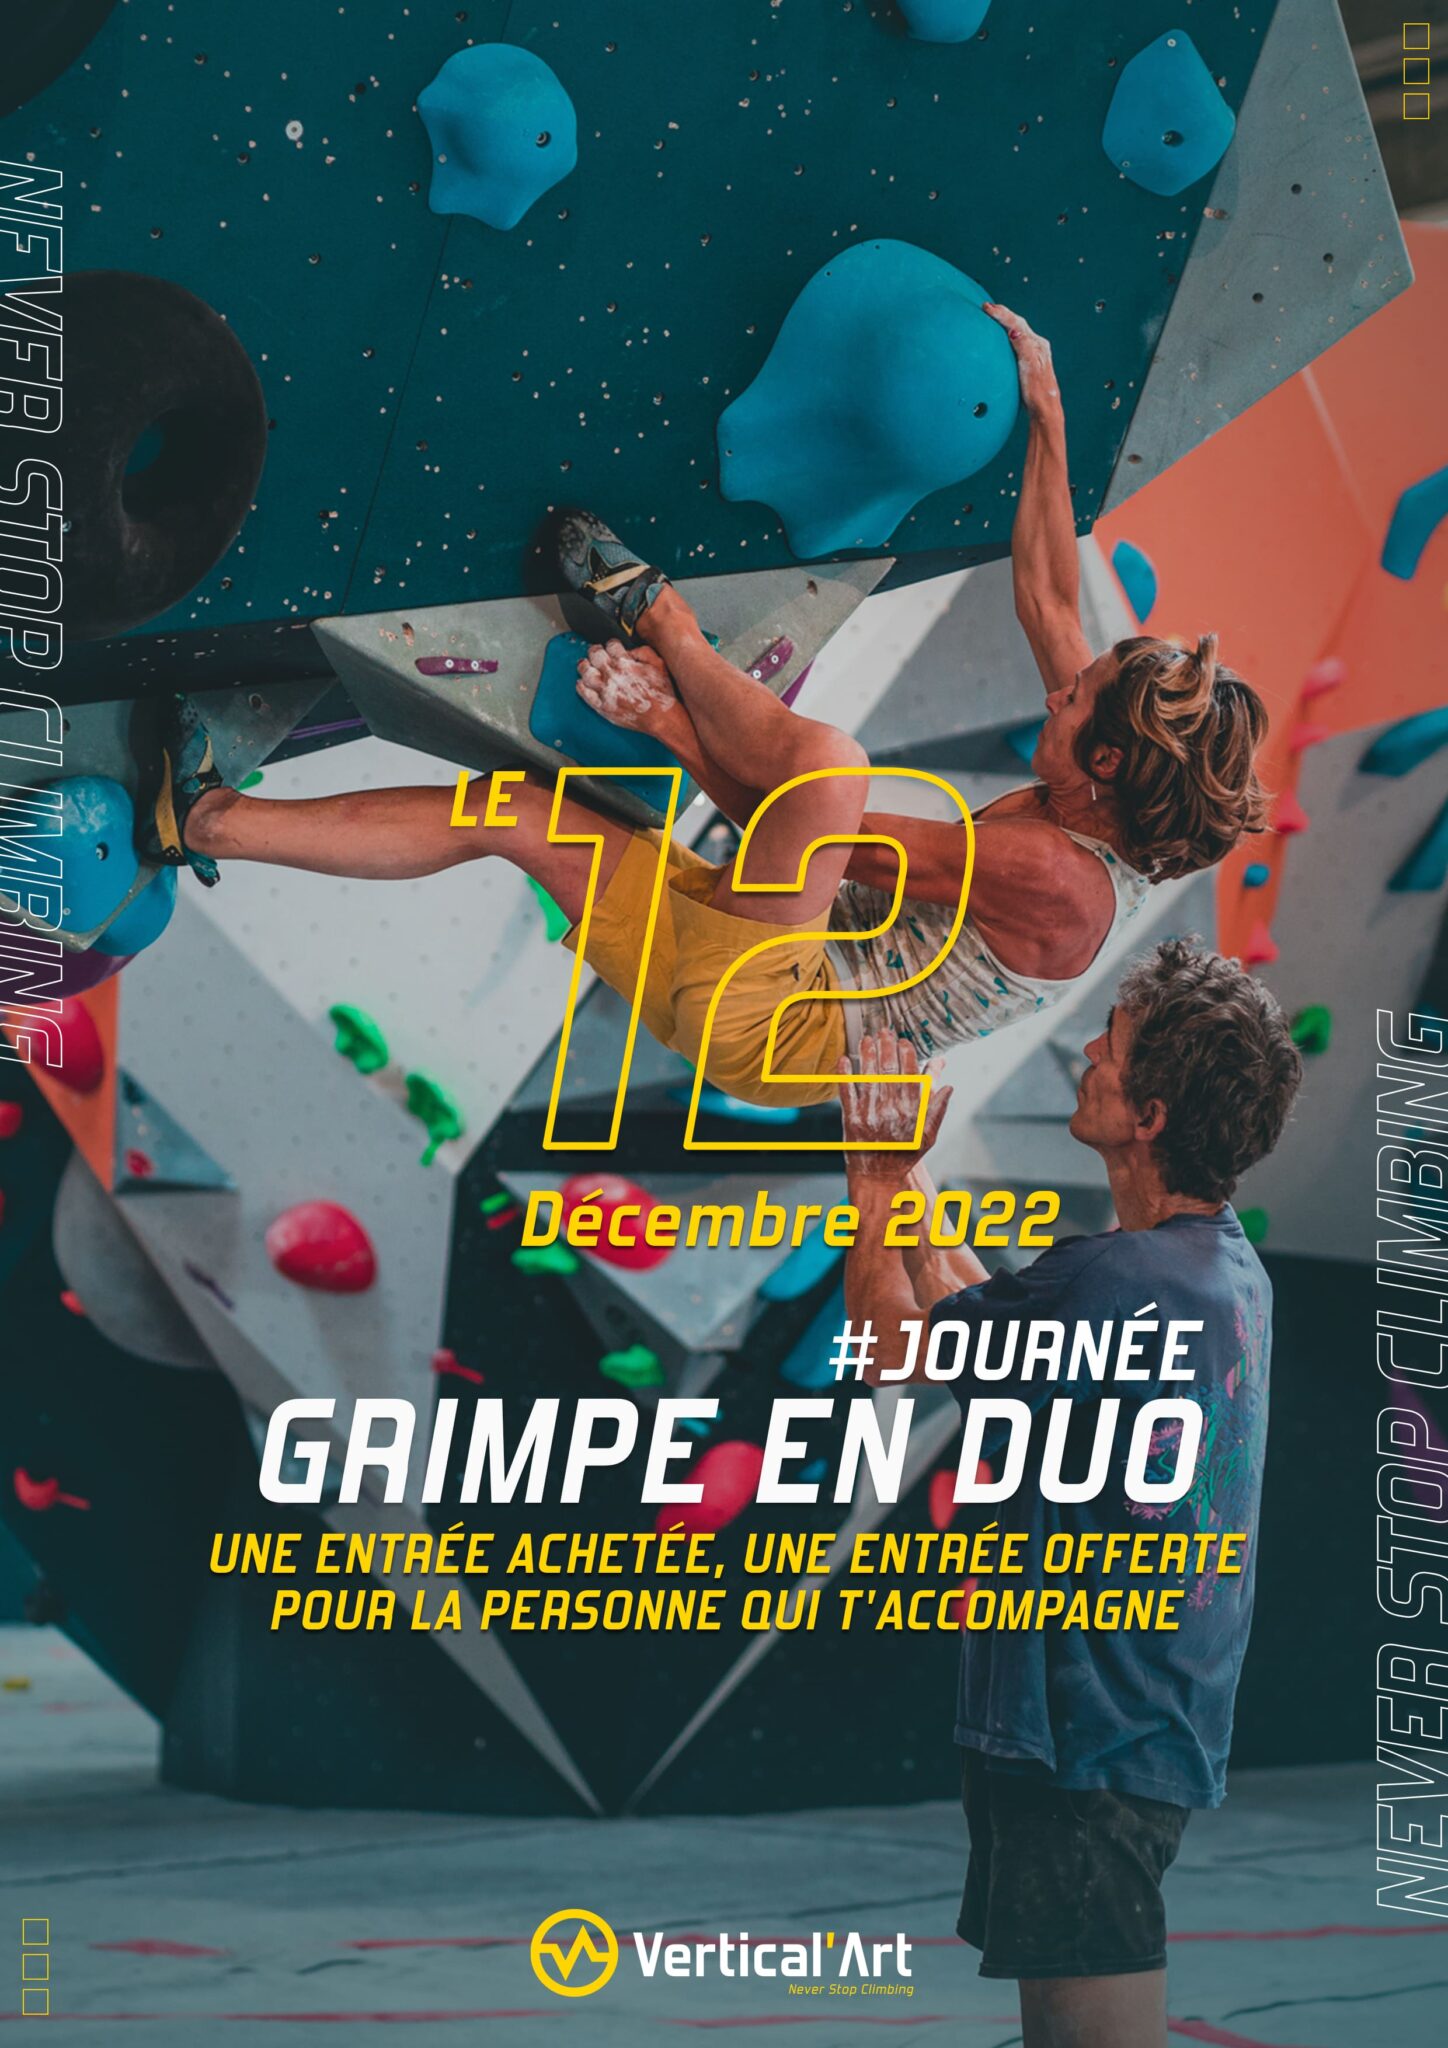 Grimpe en duo Vertical'Art Pigalle 12 décembre 2022 une entrée achetée, une offerte